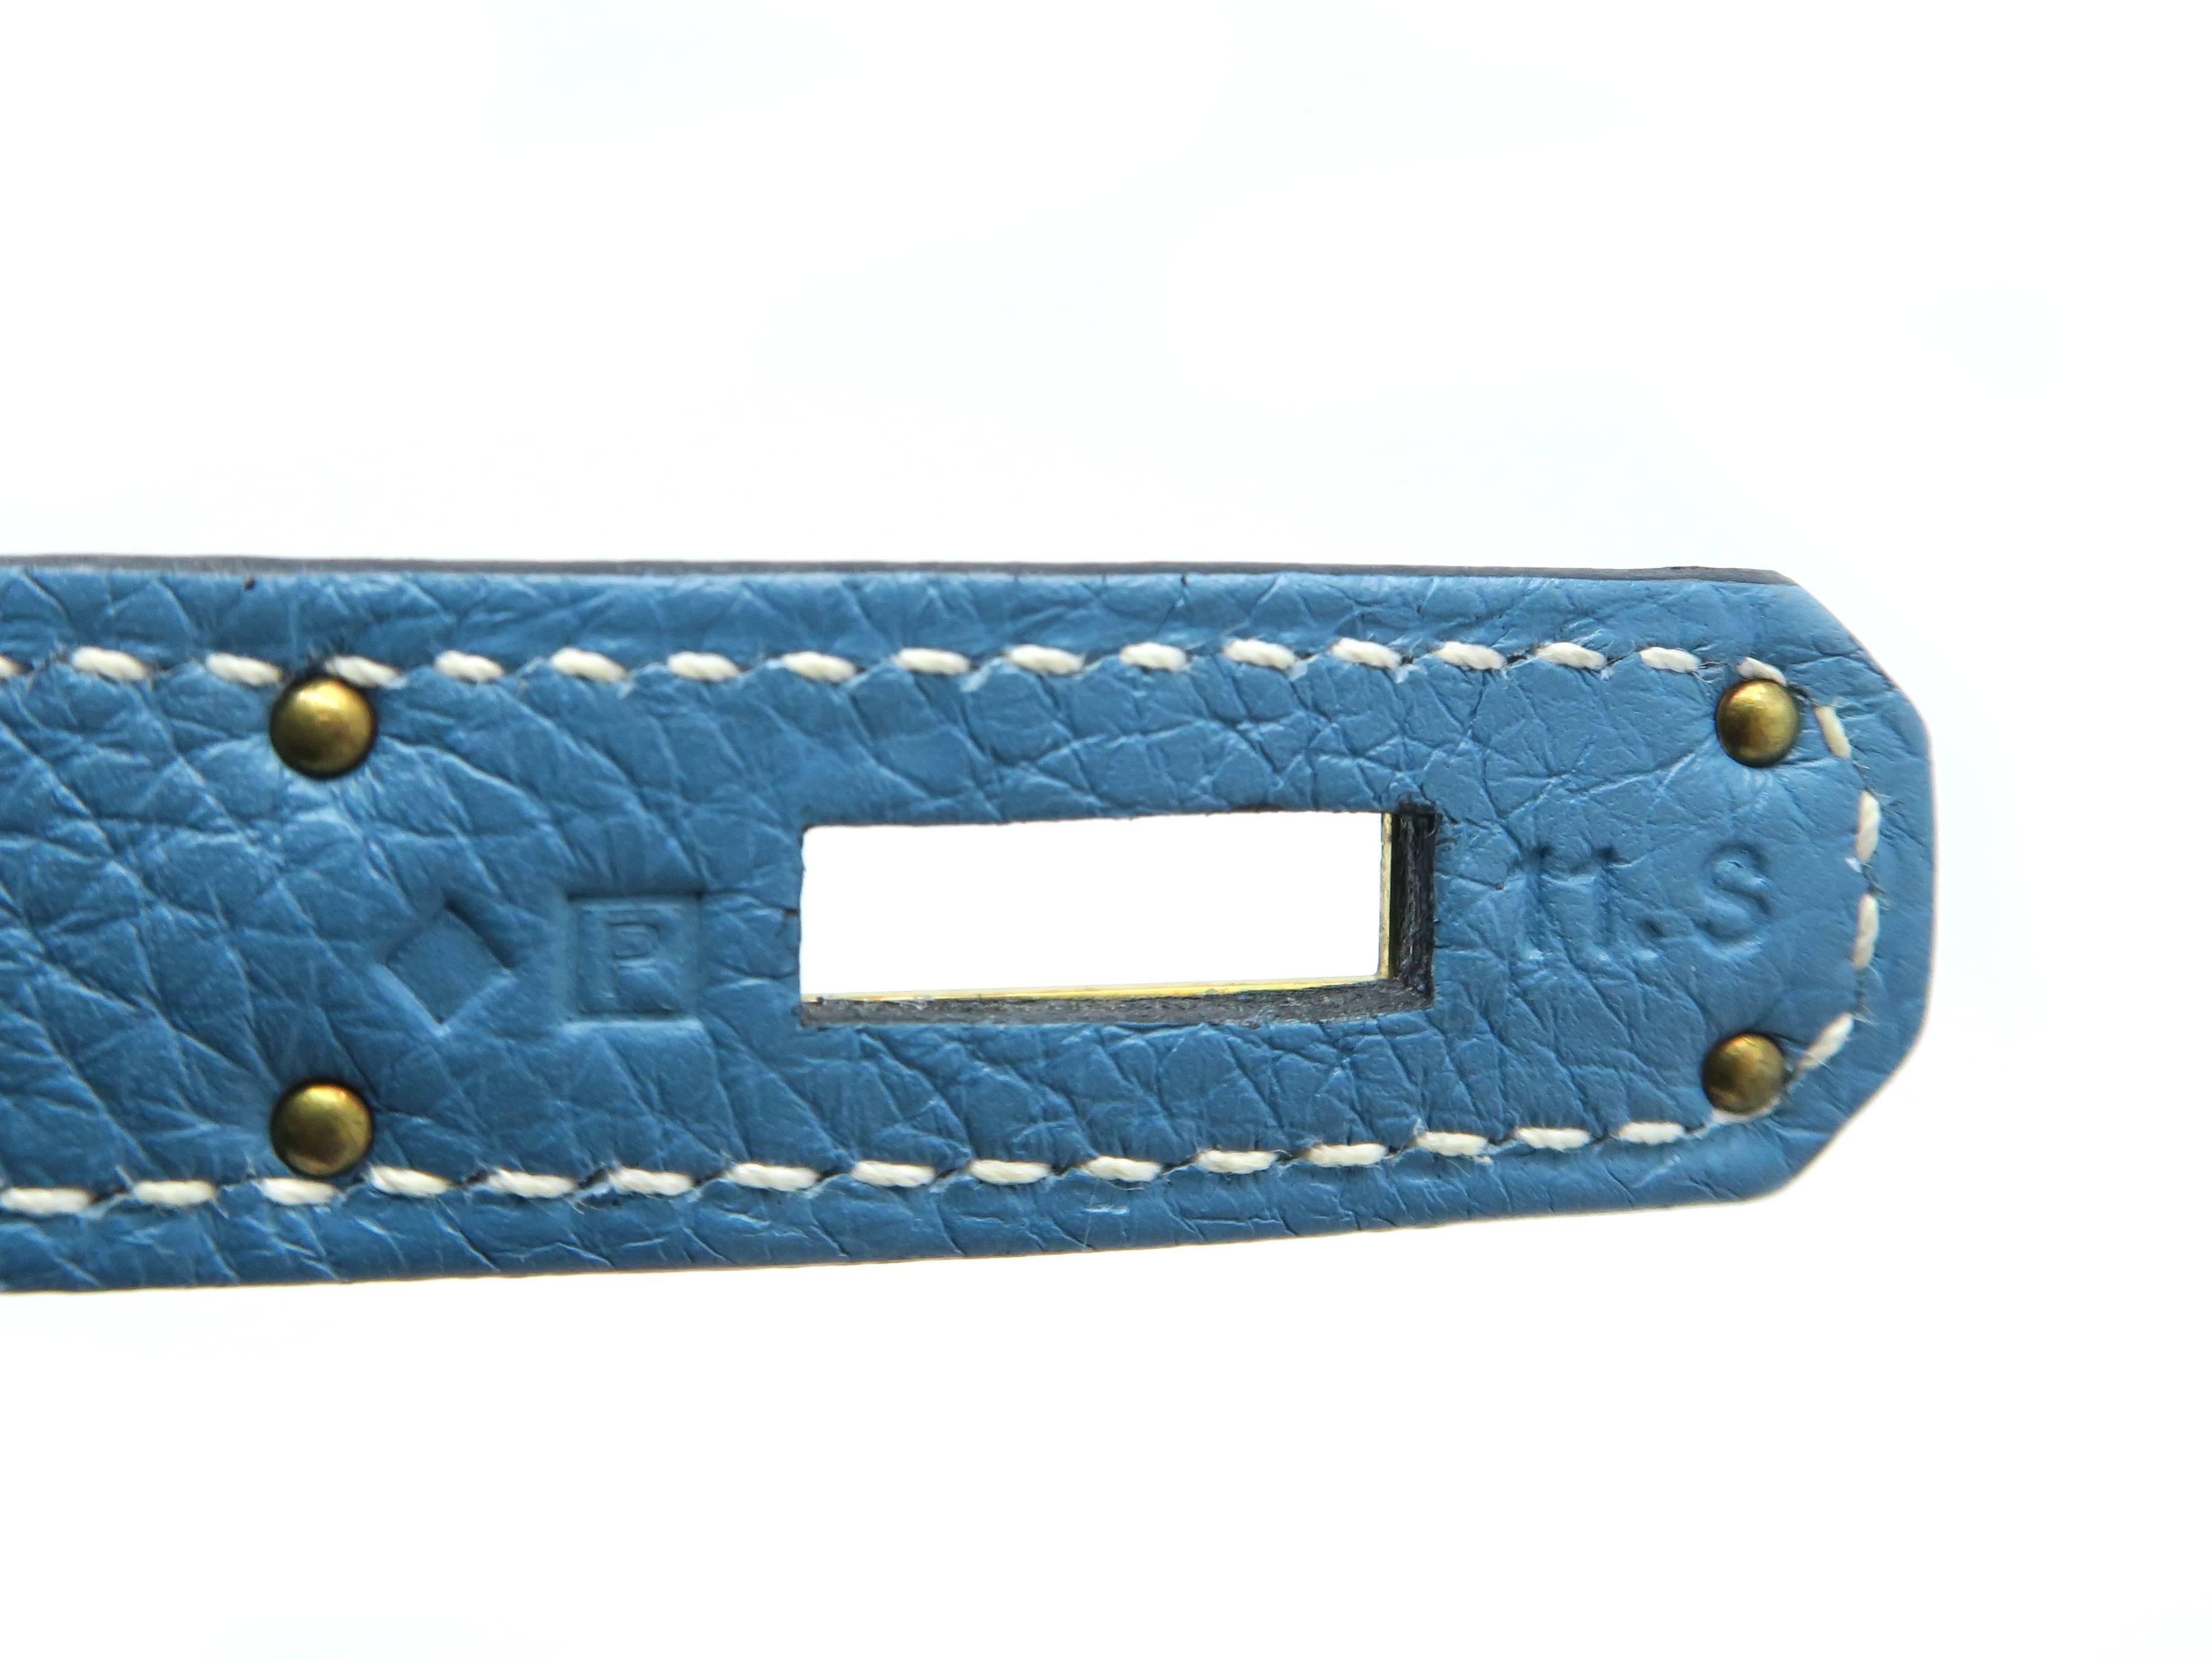 Hermes Kelly 32 Blue / Bleu Jean Togo Leather Satchel Bag 3